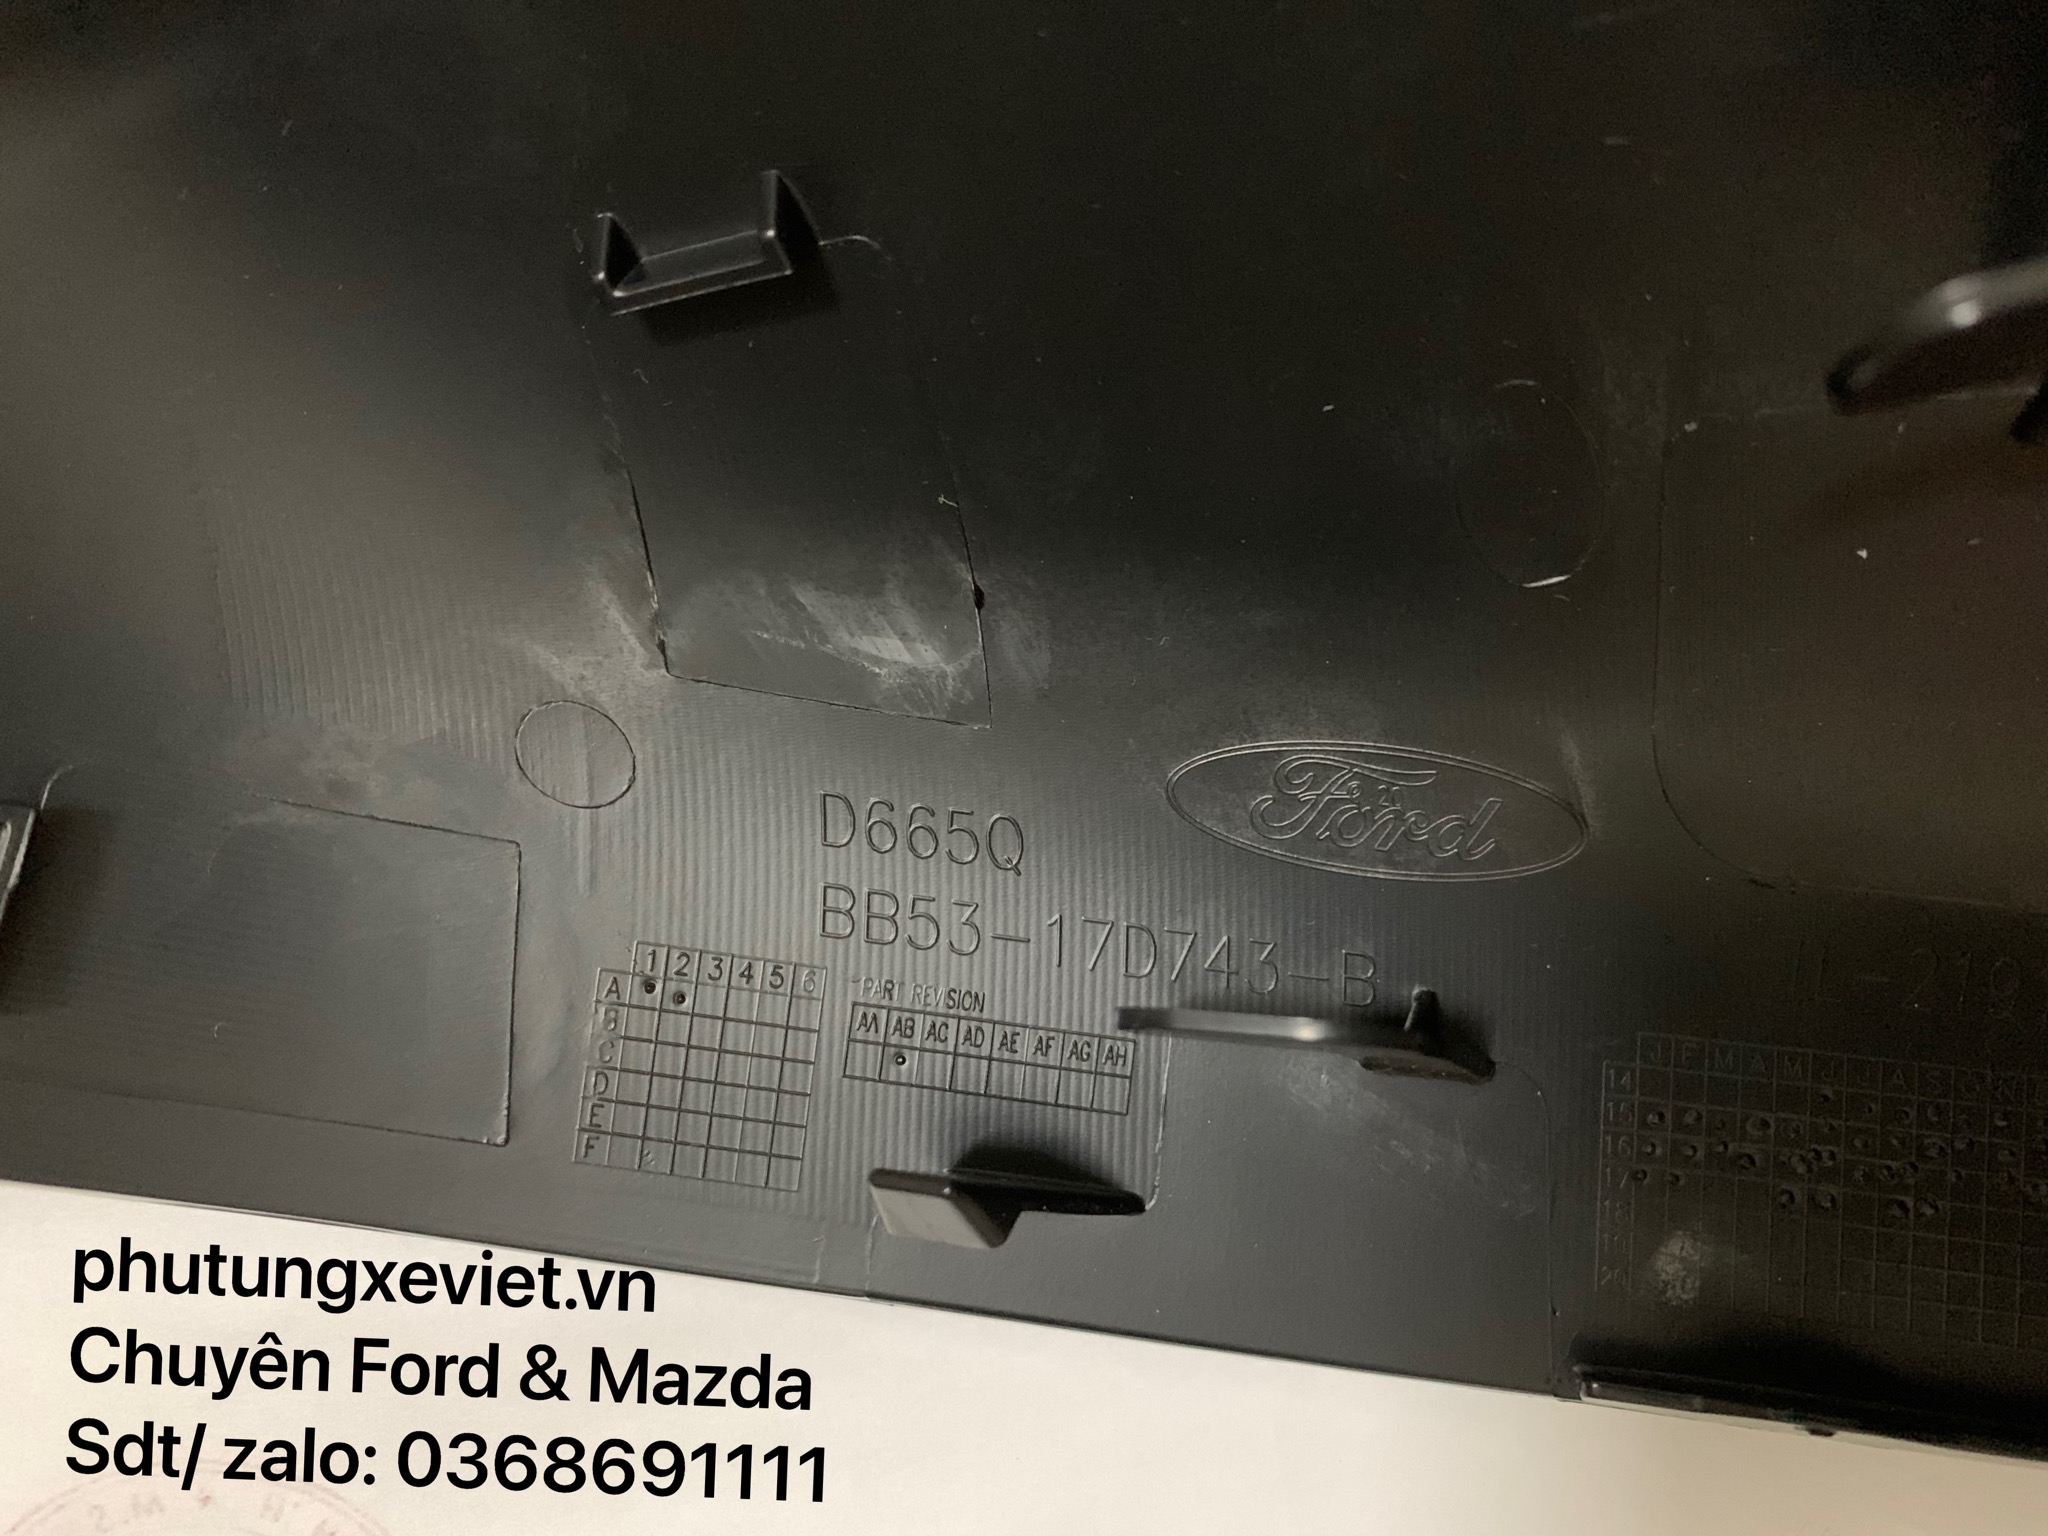 Ốp gương chiếu hậu Ford Explorer BB53-17D743-B BB5317D742B3